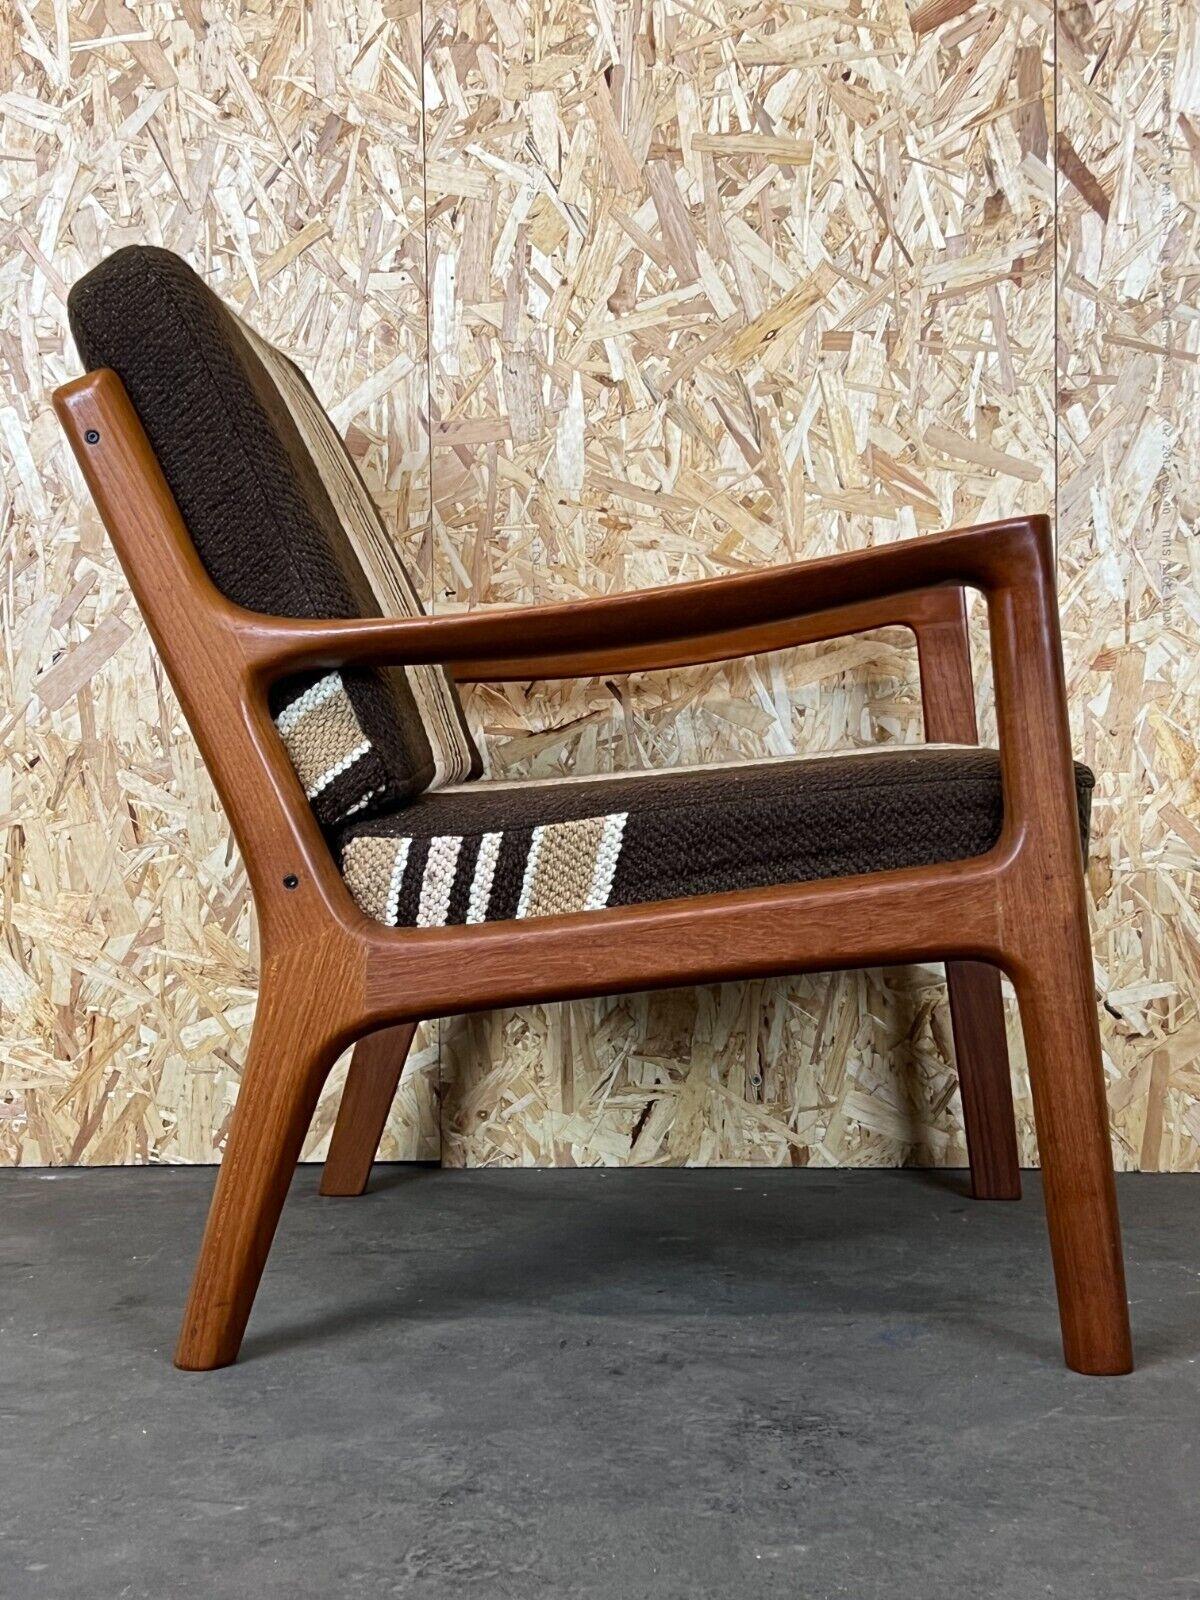 1960s-1970s Teak Easy Chair Ole Wanscher Cado France & Son Denmark For Sale 5